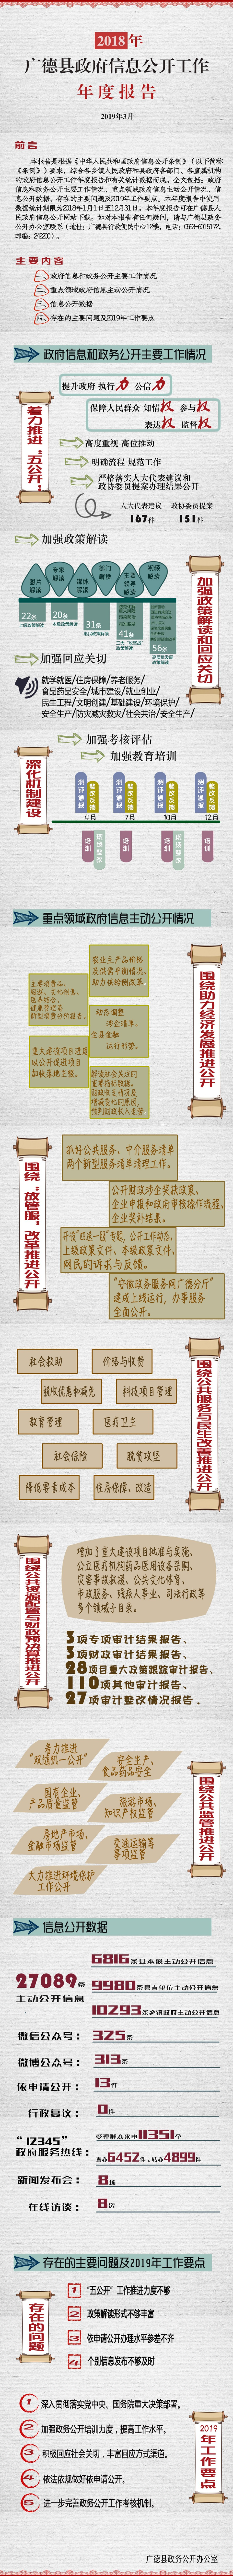 2018年广德县人民政府信息公开工作年报.jpg